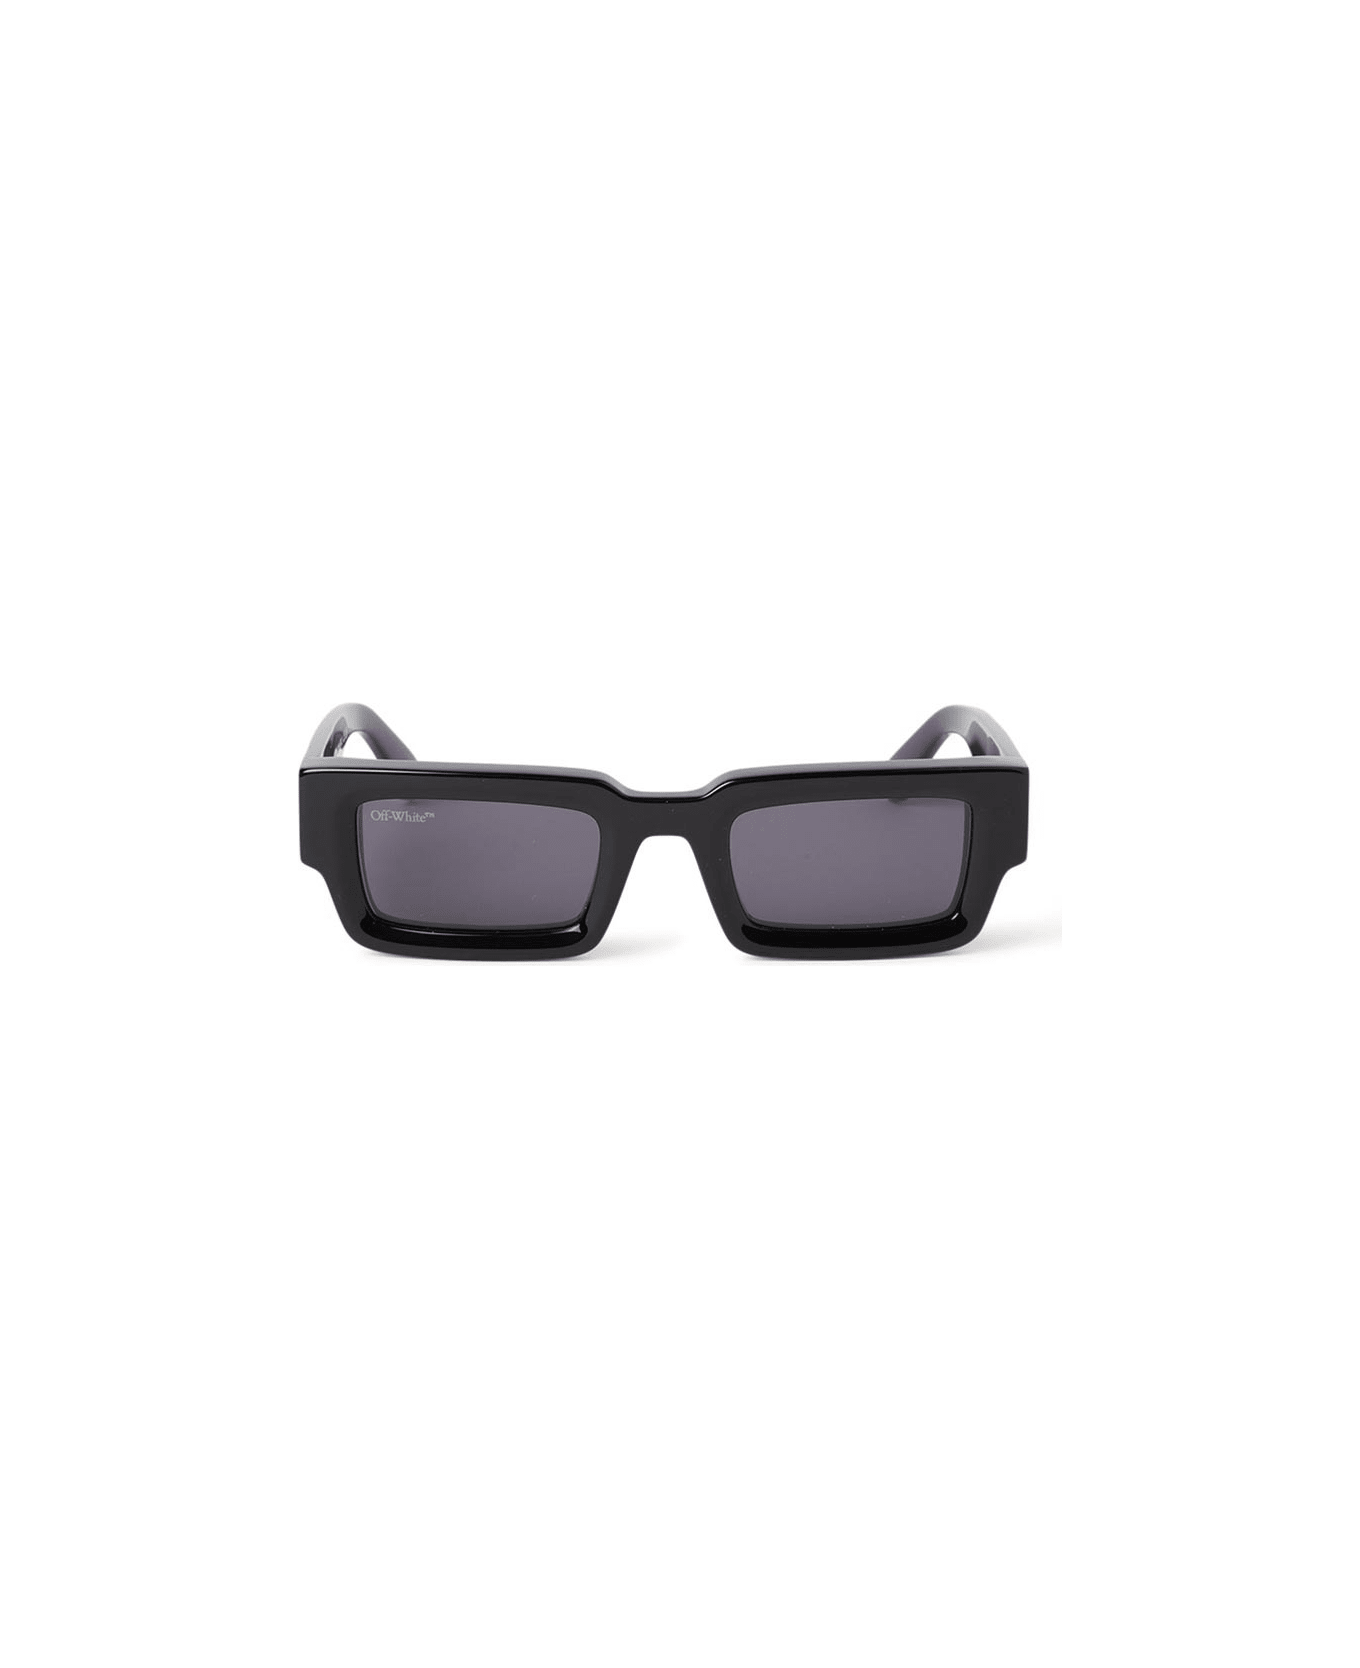 Off-White Lecce Sunglasses - Nero/Grigio サングラス